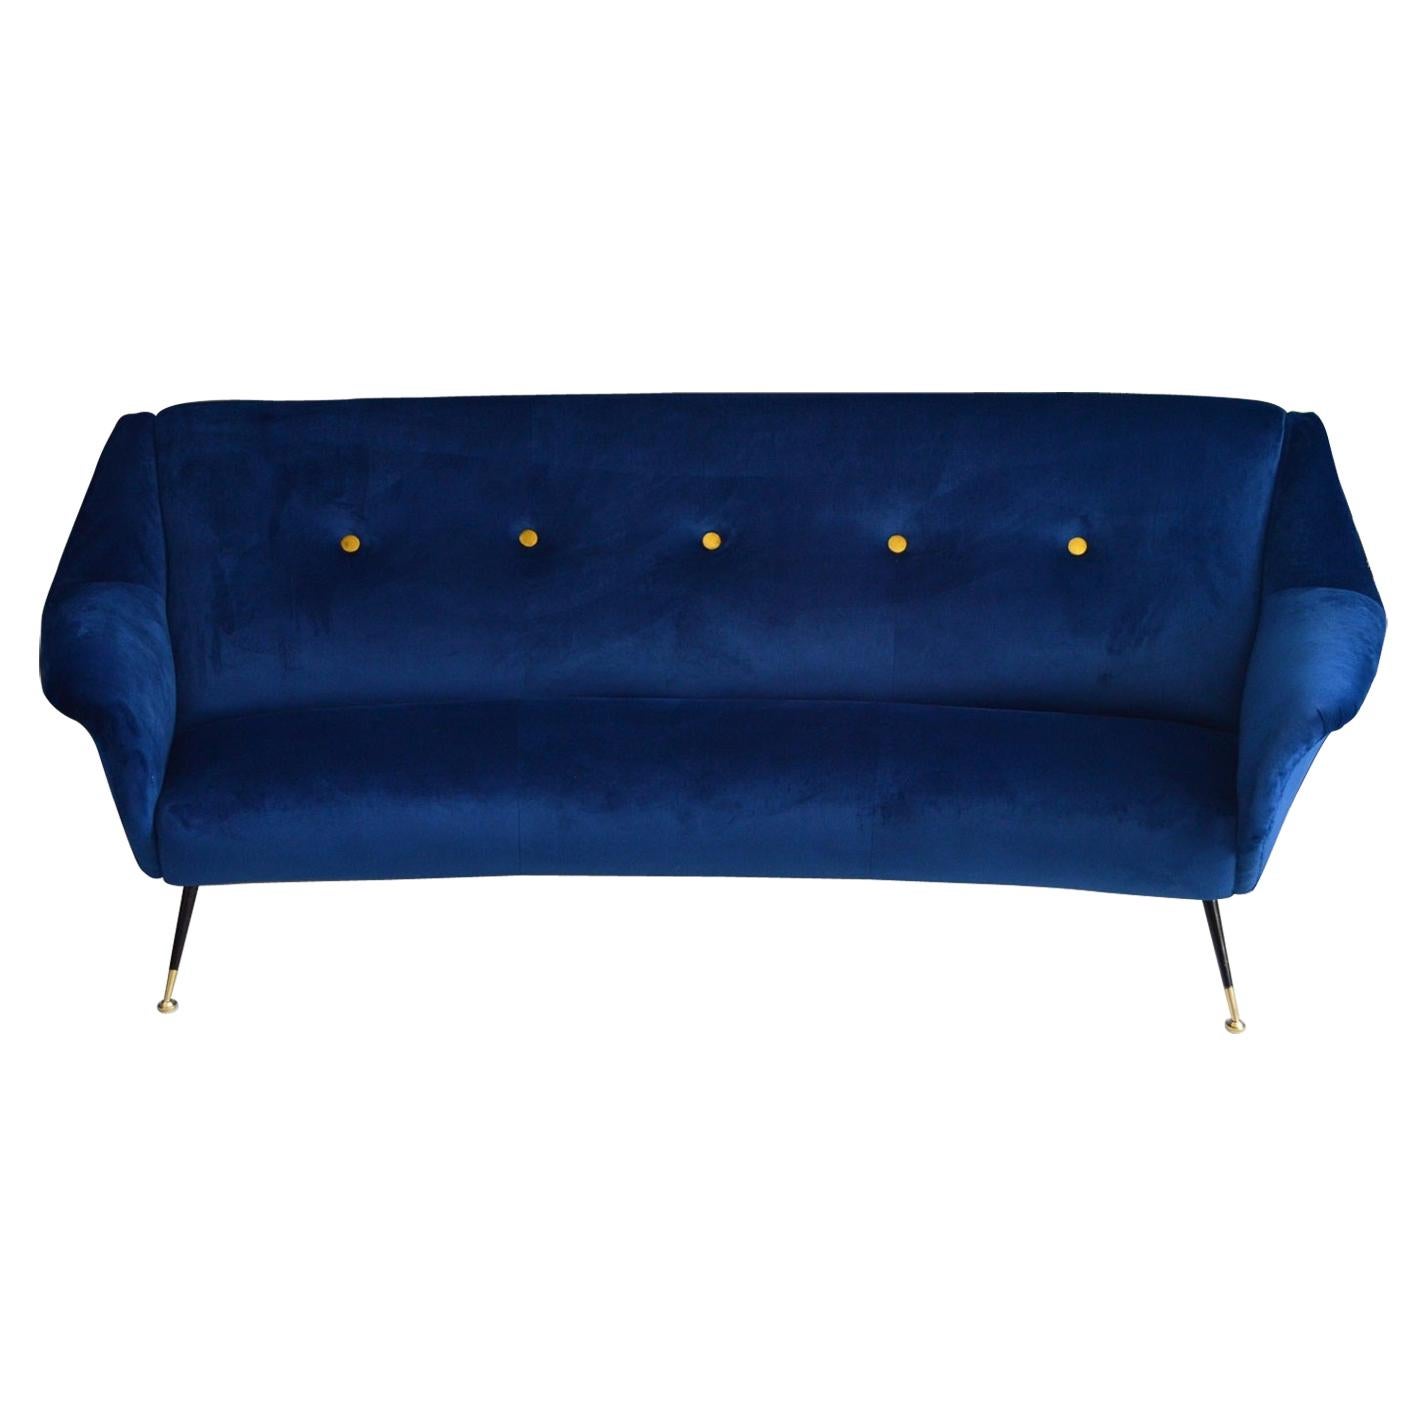 Italian Midcentury Curved Sofa in Blue Velvet, 1950s